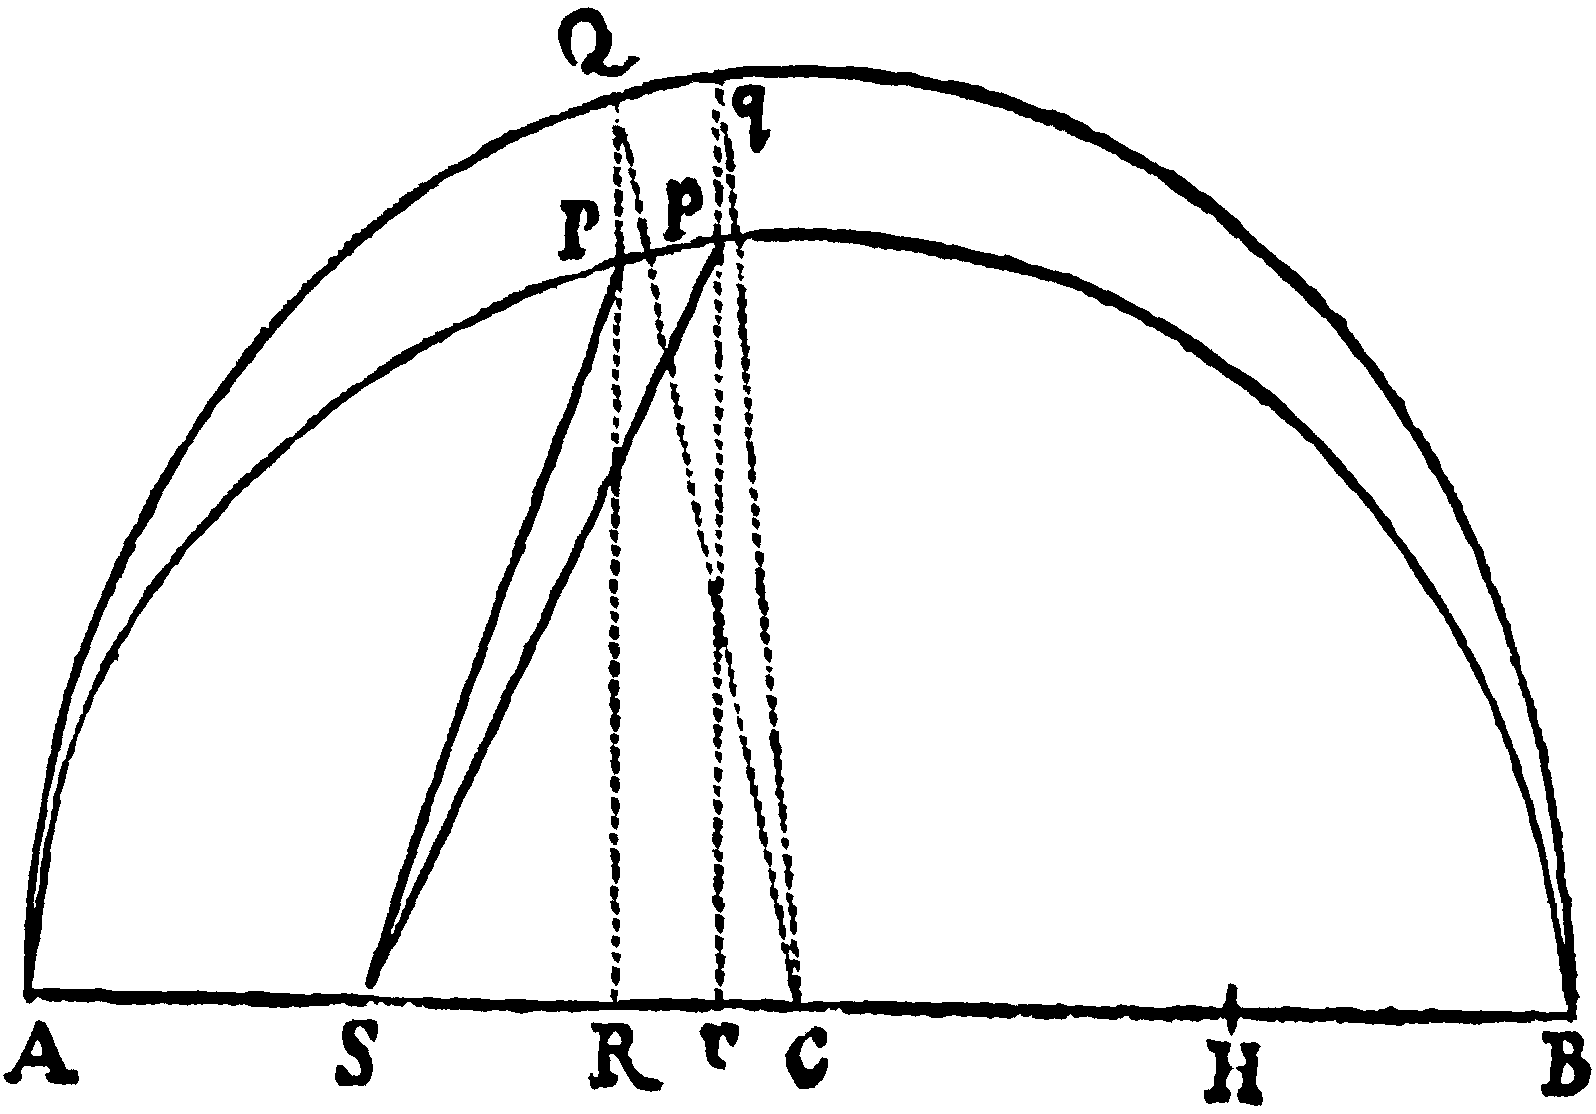 Figure for Scholium.